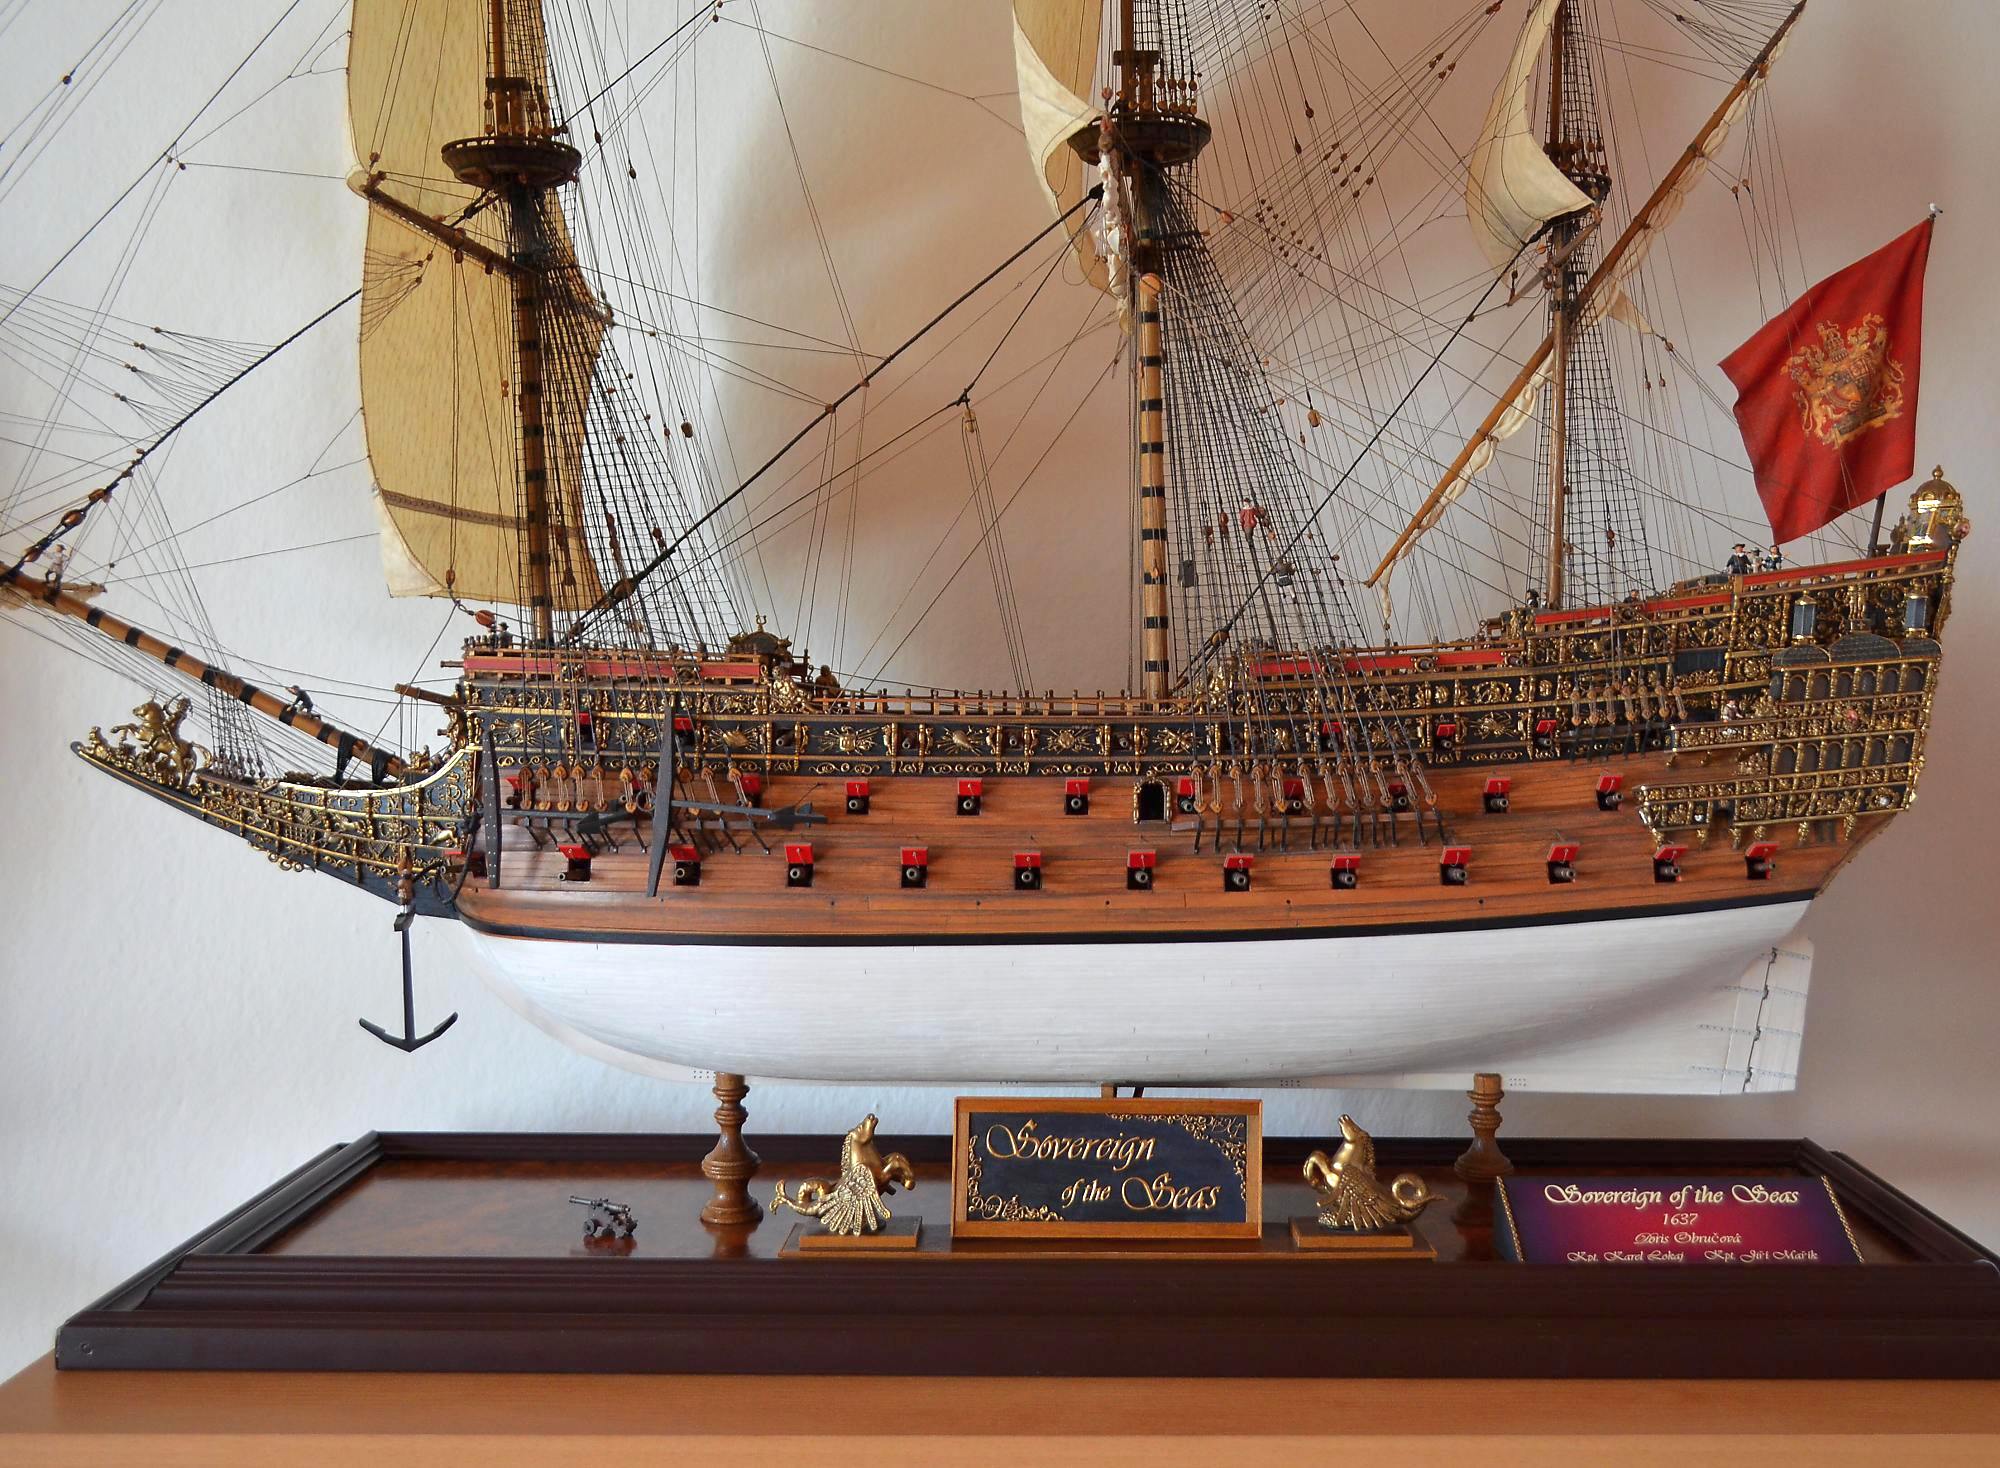 A Sovereign of the Seas modellje. Az 1637-ben épített hajó 1697-ig állt szolgálatban, 1660-ban keresztelték át a Royal Sovereign névre. A 102 ágyús hajó sokáig a világ legnagyobb és legerősebb hadihajója volt, a hollandok az Aranyozott Ördög (Den Gulden Duvel) néven emlegették. Megépítésére ráment Anglia teljes éves adóbevételének a harmada.